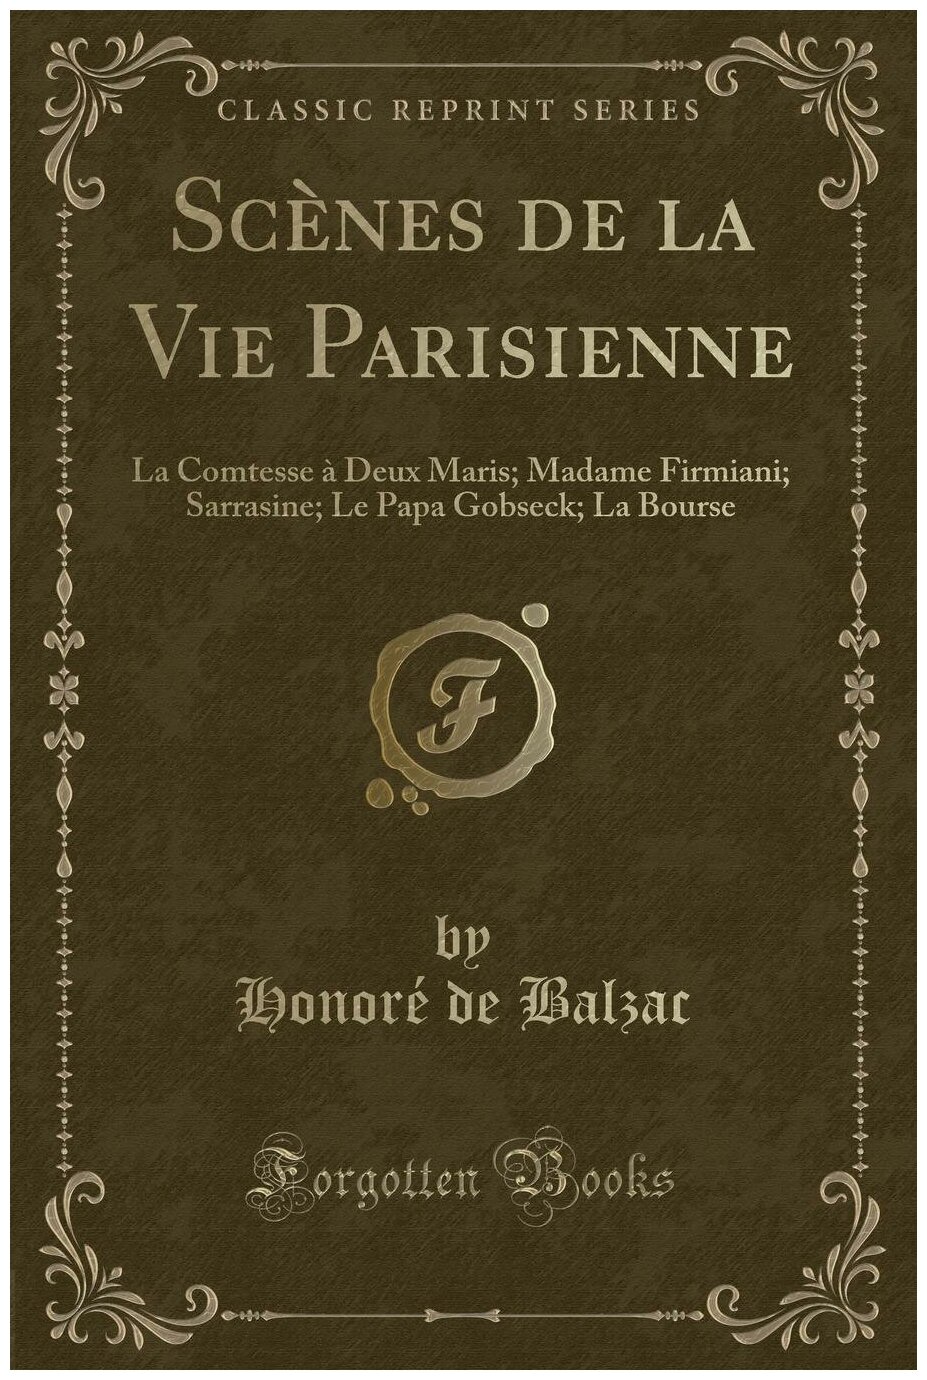 Scènes de la Vie Parisienne. La Comtesse à Deux Maris; Madame Firmiani; Sarrasine; Le Papa Gobseck; La Bourse (Classic Reprint)